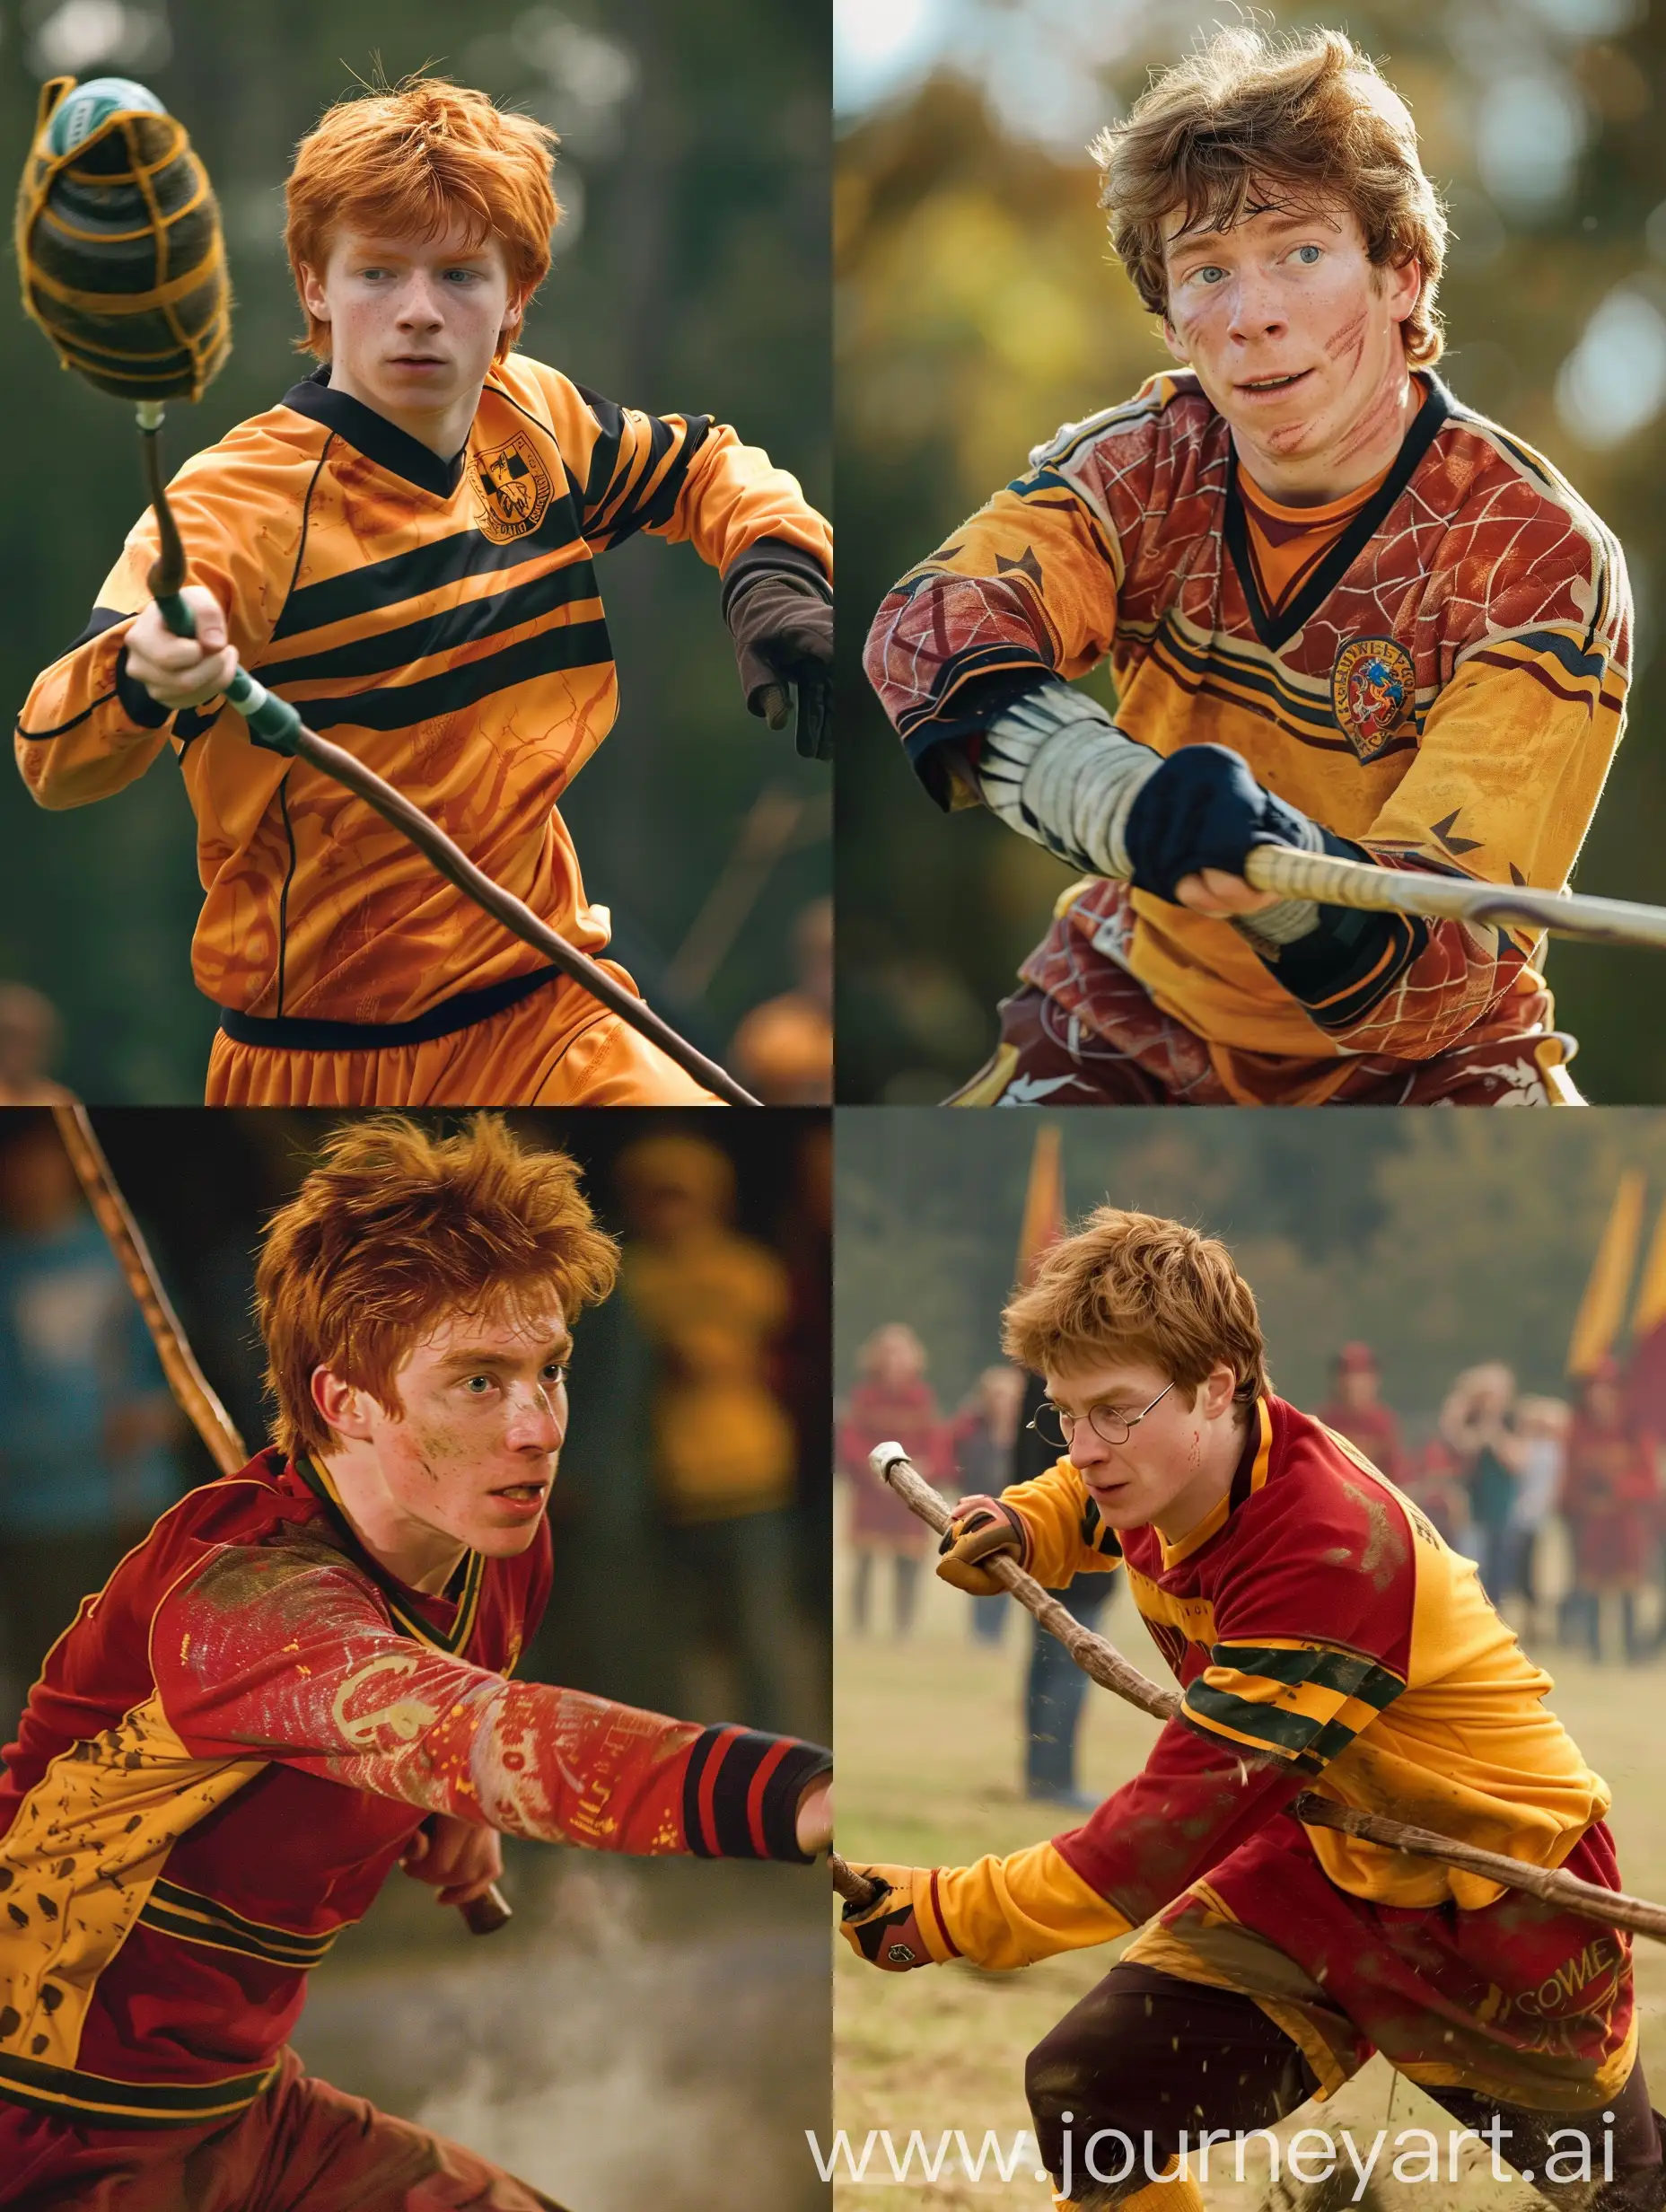 Ron-Weasley-Playing-Quidditch-in-Quidditch-Uniform